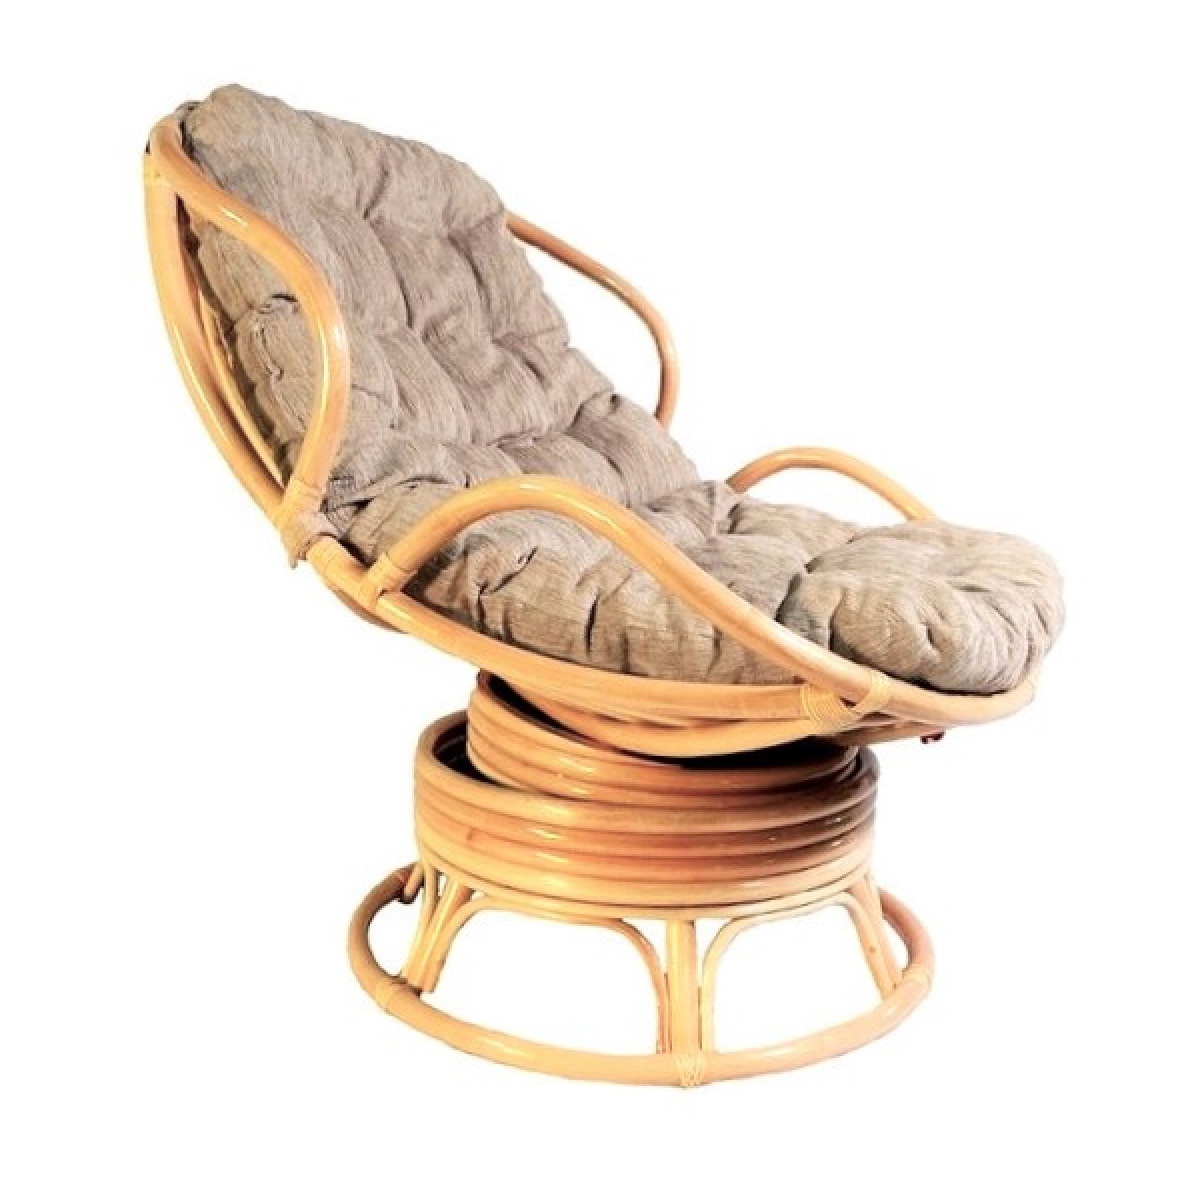 кресло из натурального ротанга челси папасан